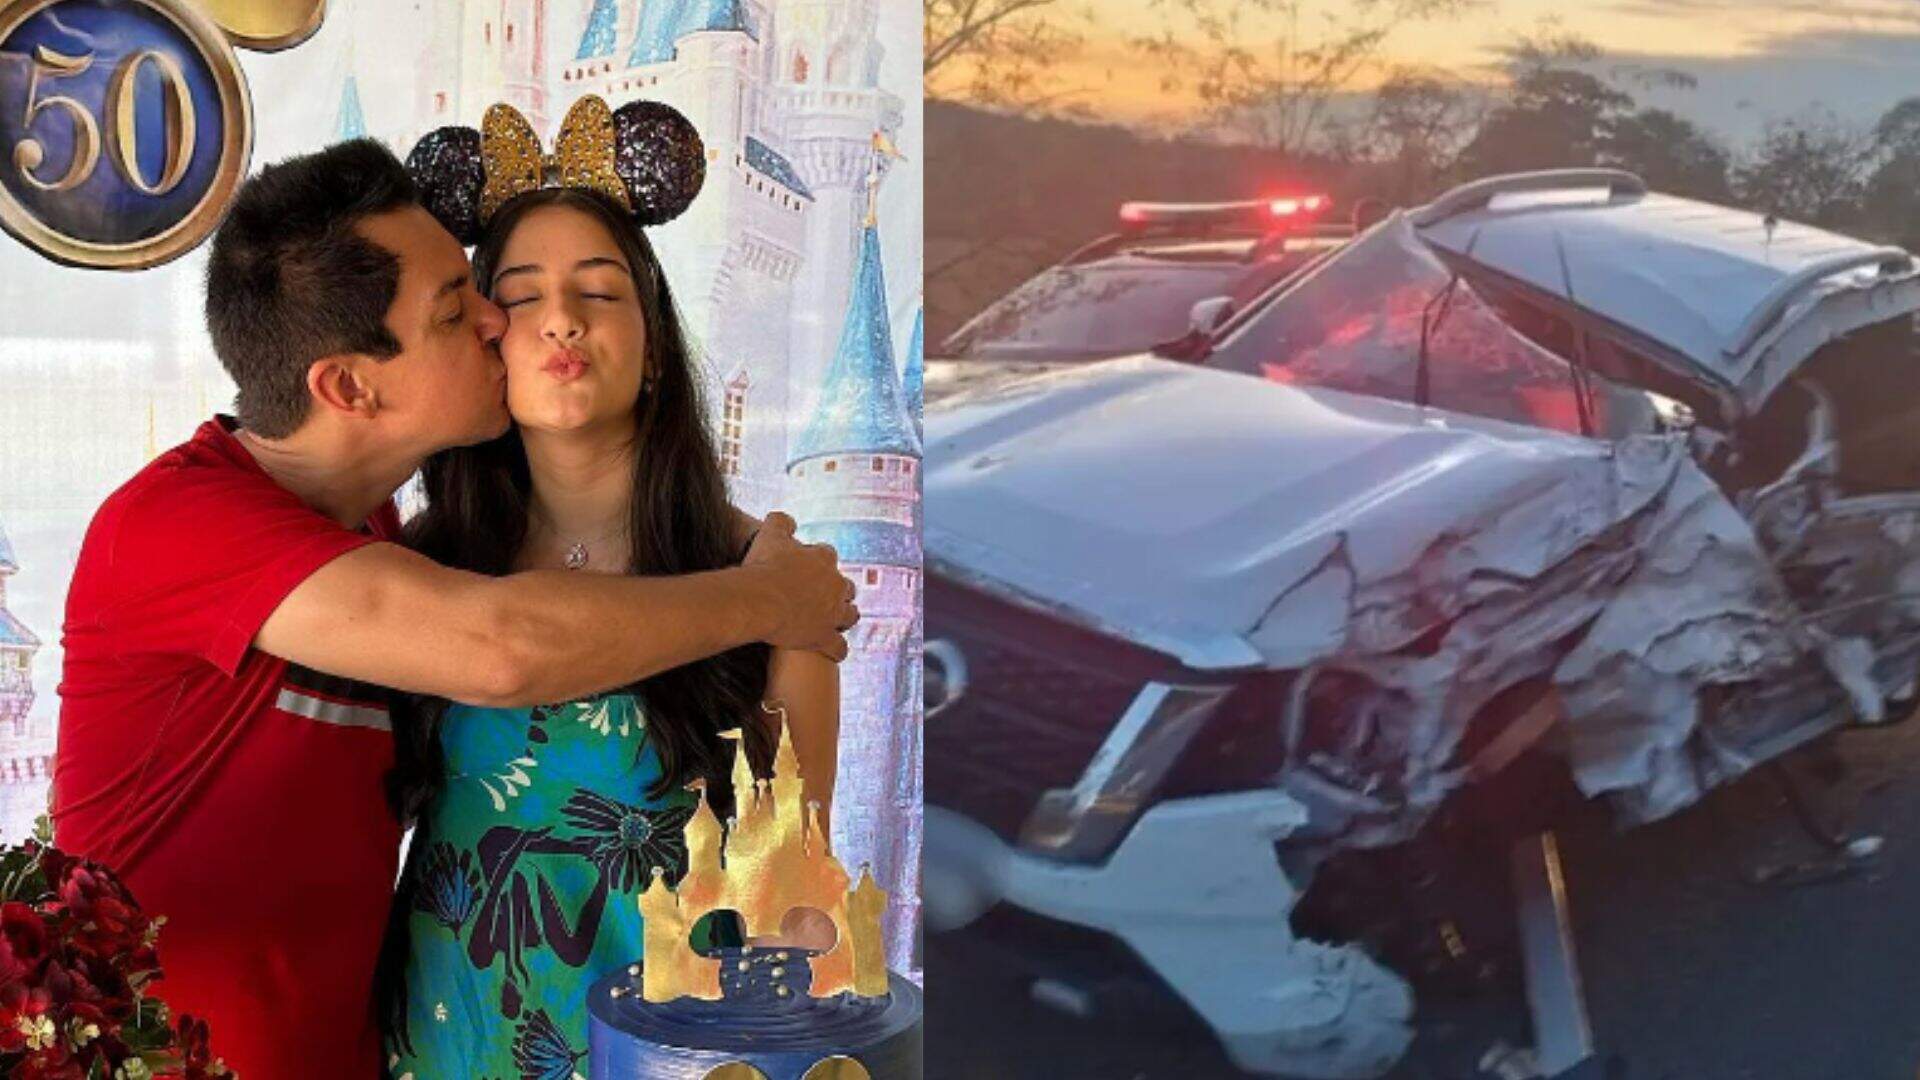 URGENTE: Filha de Regis Danese, que sofreu grave acidente de carro, se pronuncia: “Momento delicado” - Metropolitana FM